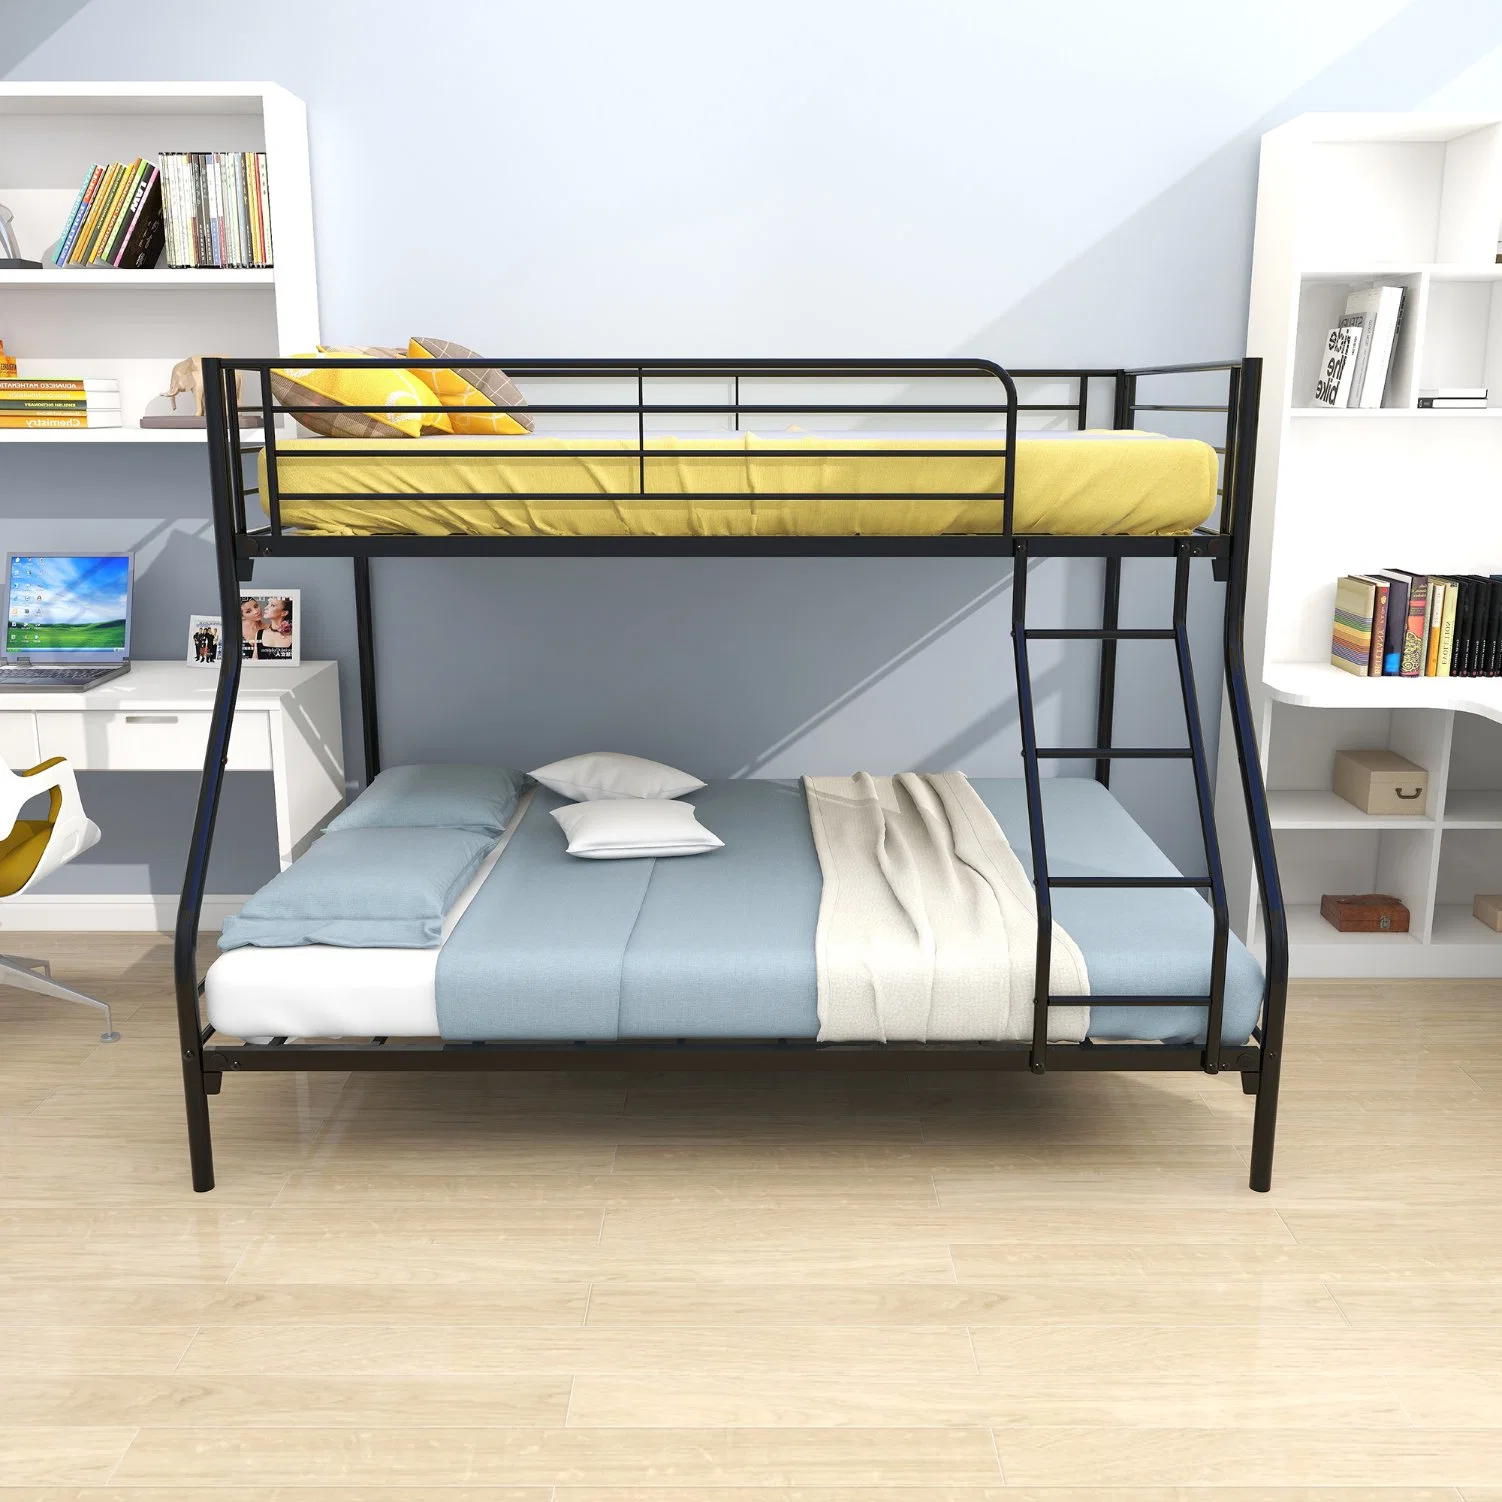 سرير حديث بسيط مرتفع ومنخفض للبالغين وسرير غرفة نوم للأطفال